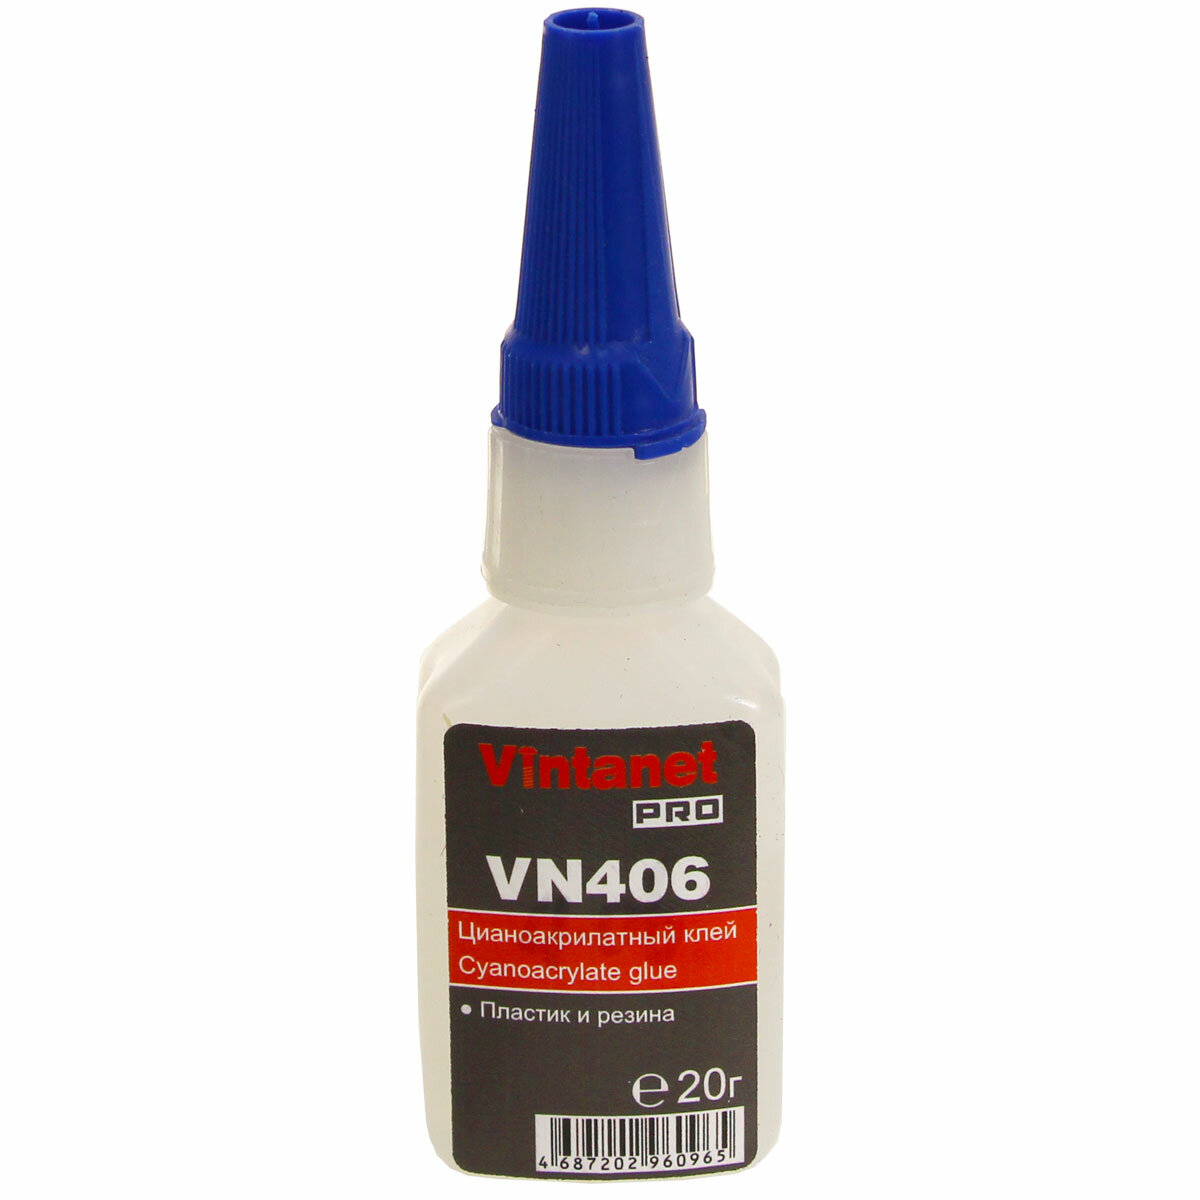 Клей моментальный цианоакрилатный для эластомеров и резины VINTANET VN406 20 гр